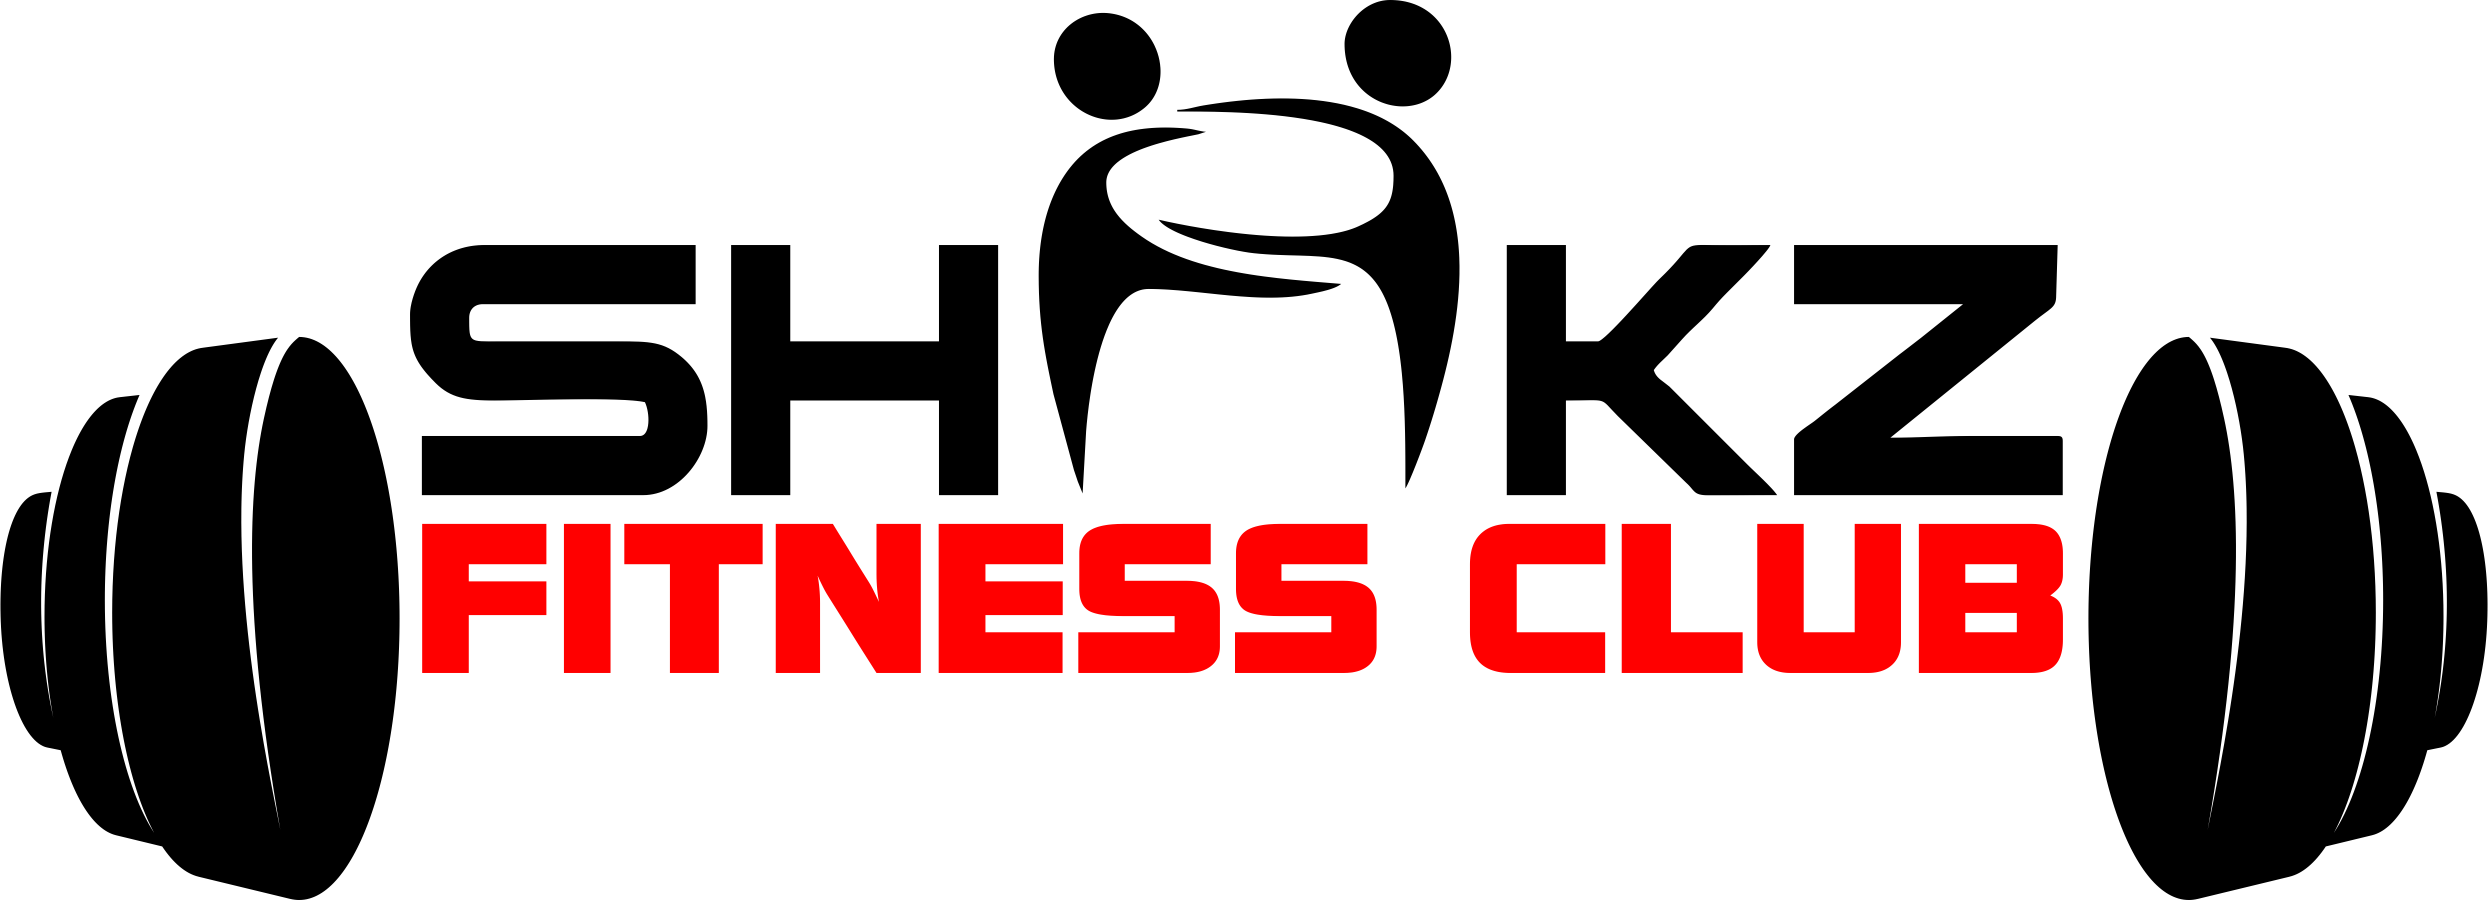 SHAKZ FITNESS CLUB - Logo